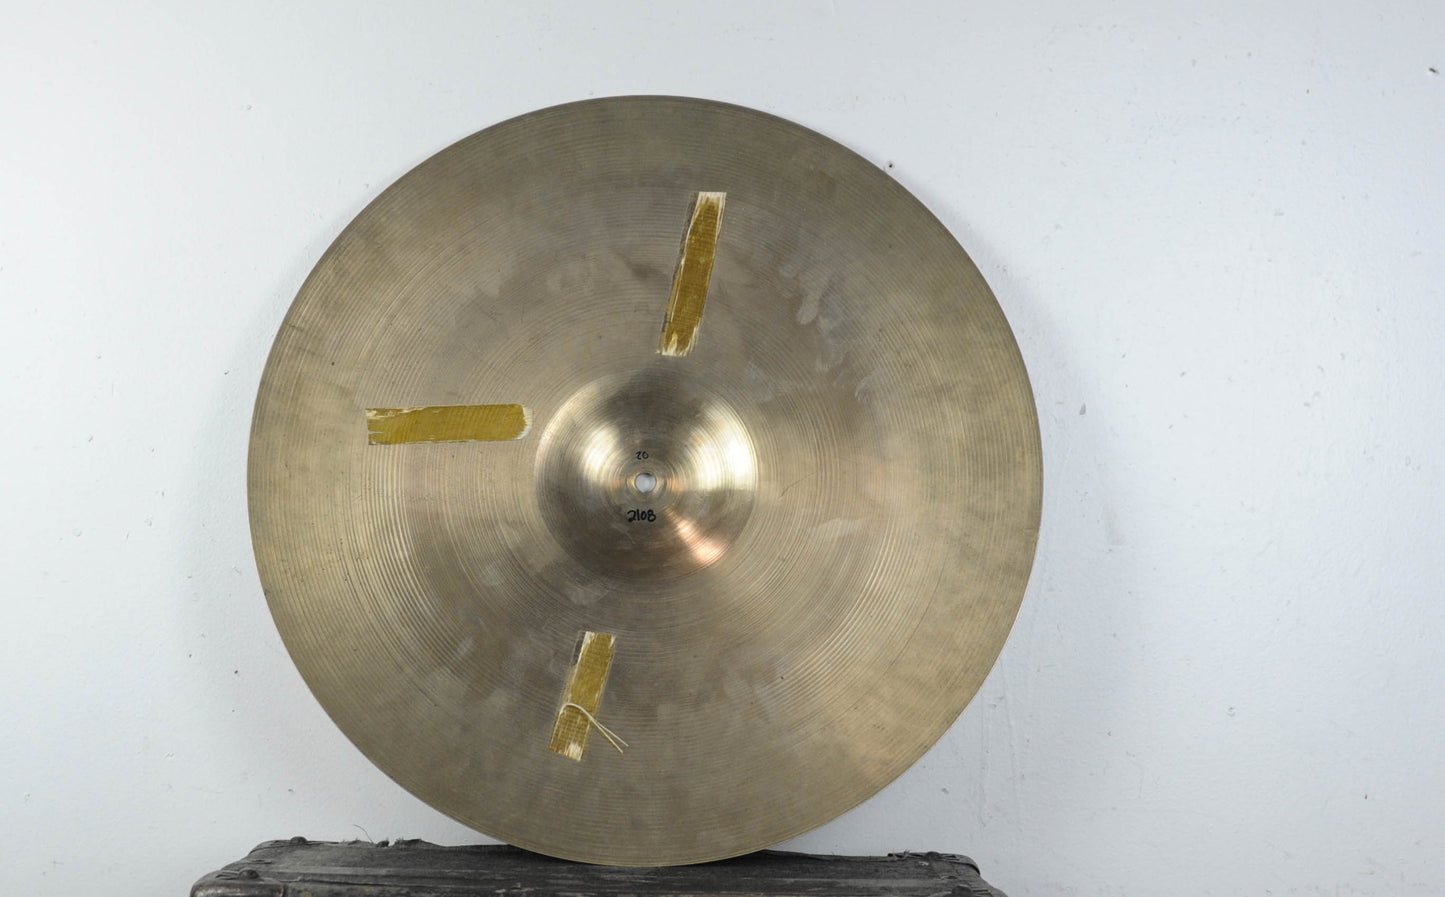 1960s Zildjian A 20" Ride Cymbal 2108g